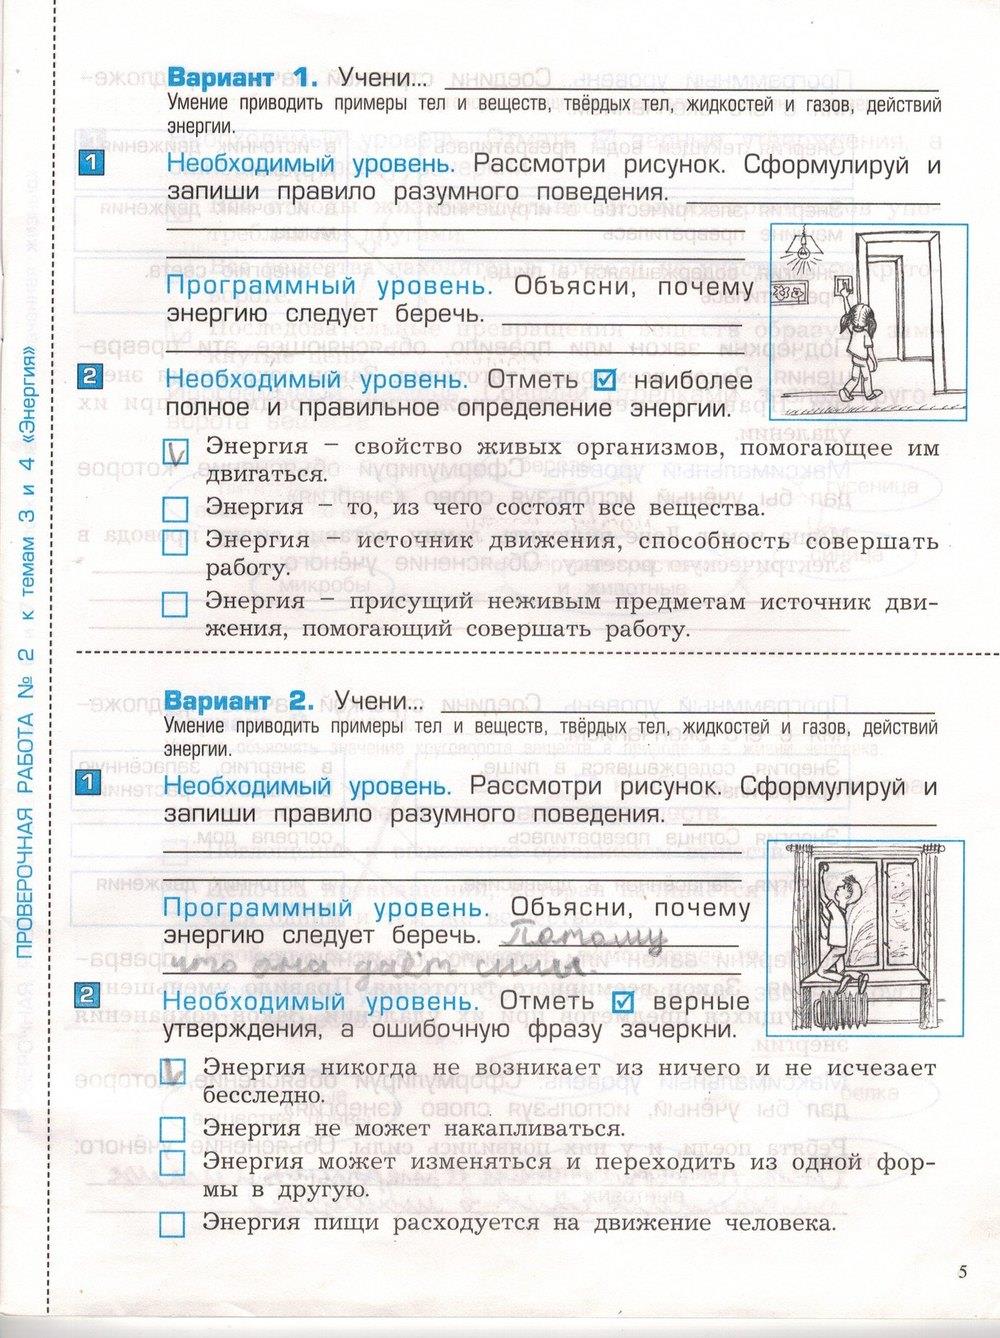 гдз 3 класс проверочные и контрольные работы часть 1 страница 5 окружающий мир Вахрушев, Бурский, Родыгина